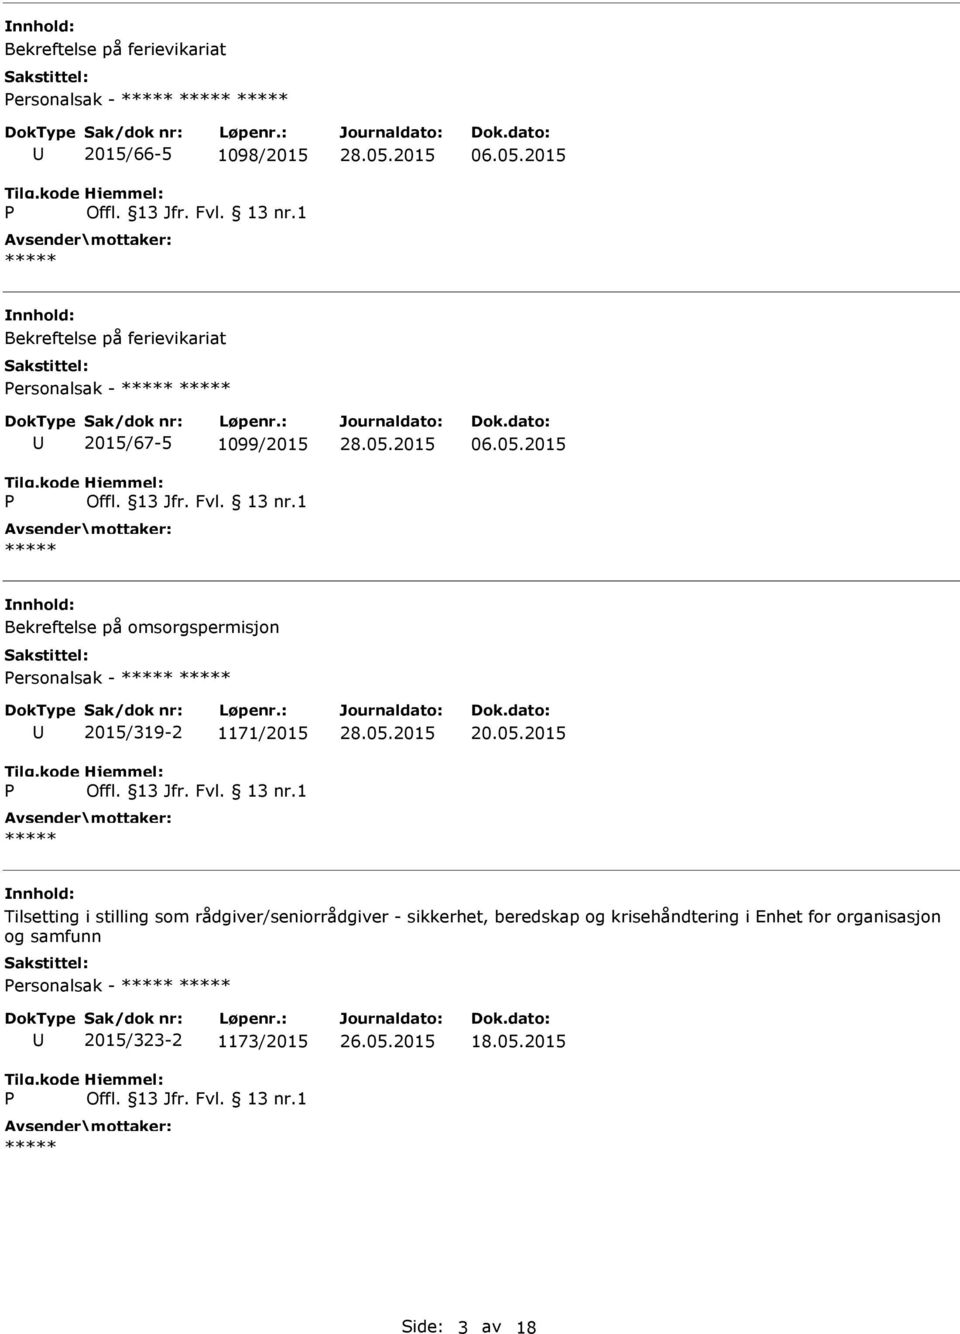 2015 Bekreftelse på omsorgspermisjon ersonalsak - 2015/319-2 1171/2015 20.05.